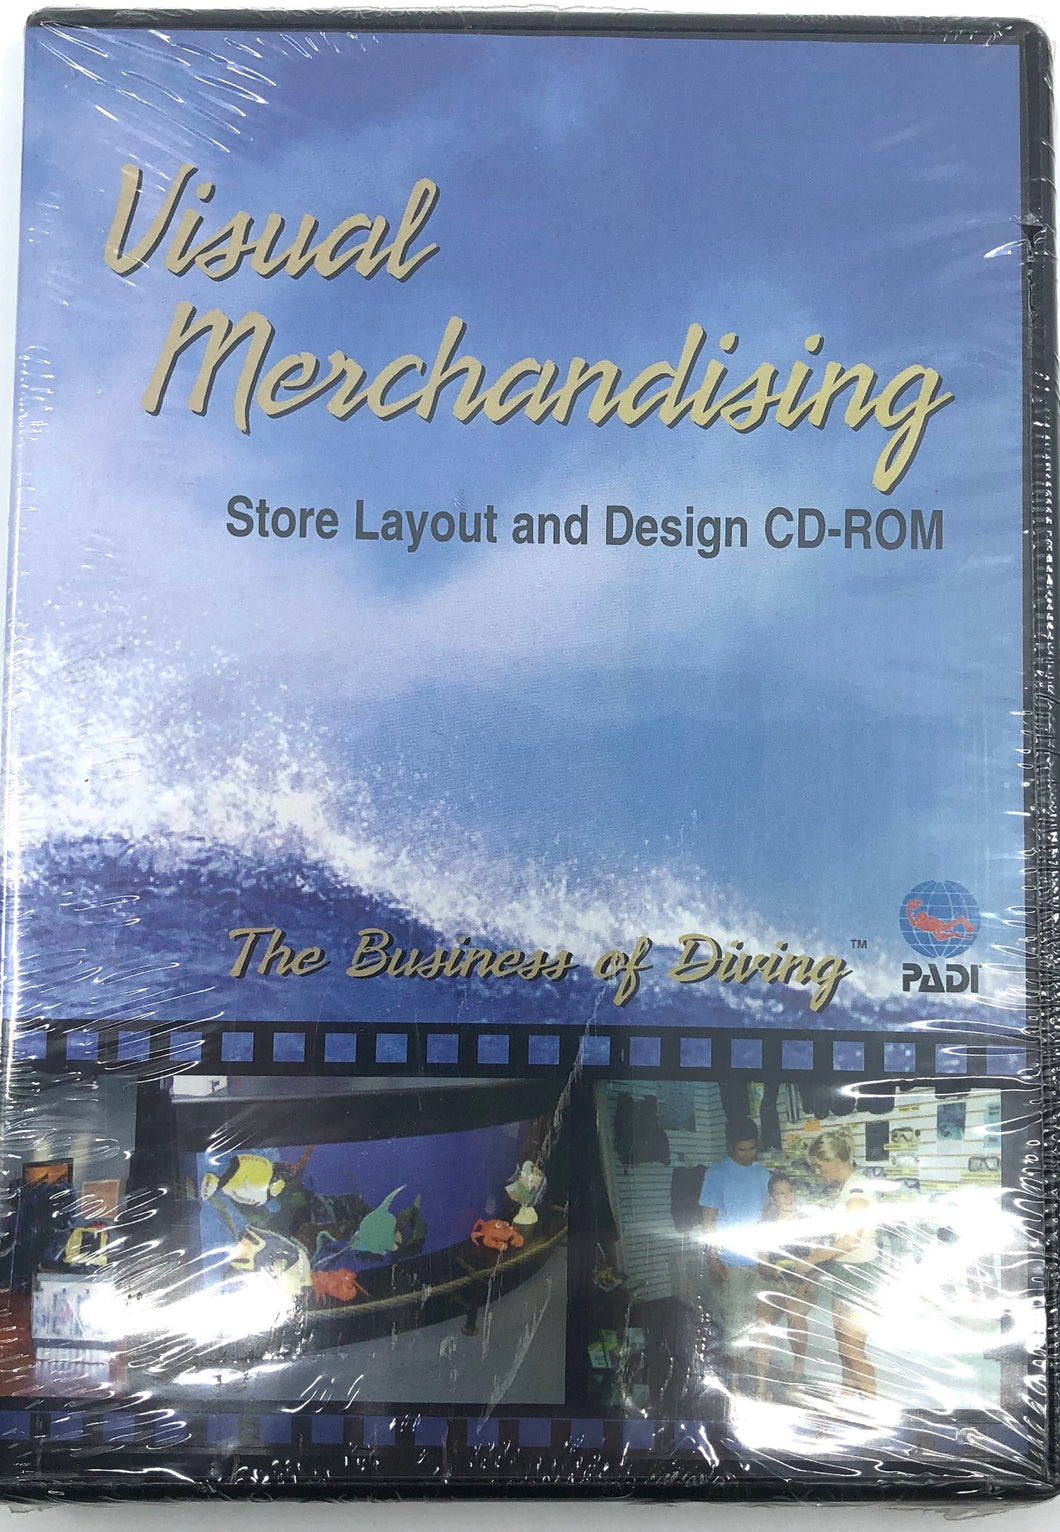 Padi Visual Merchandising Store Layout DVD